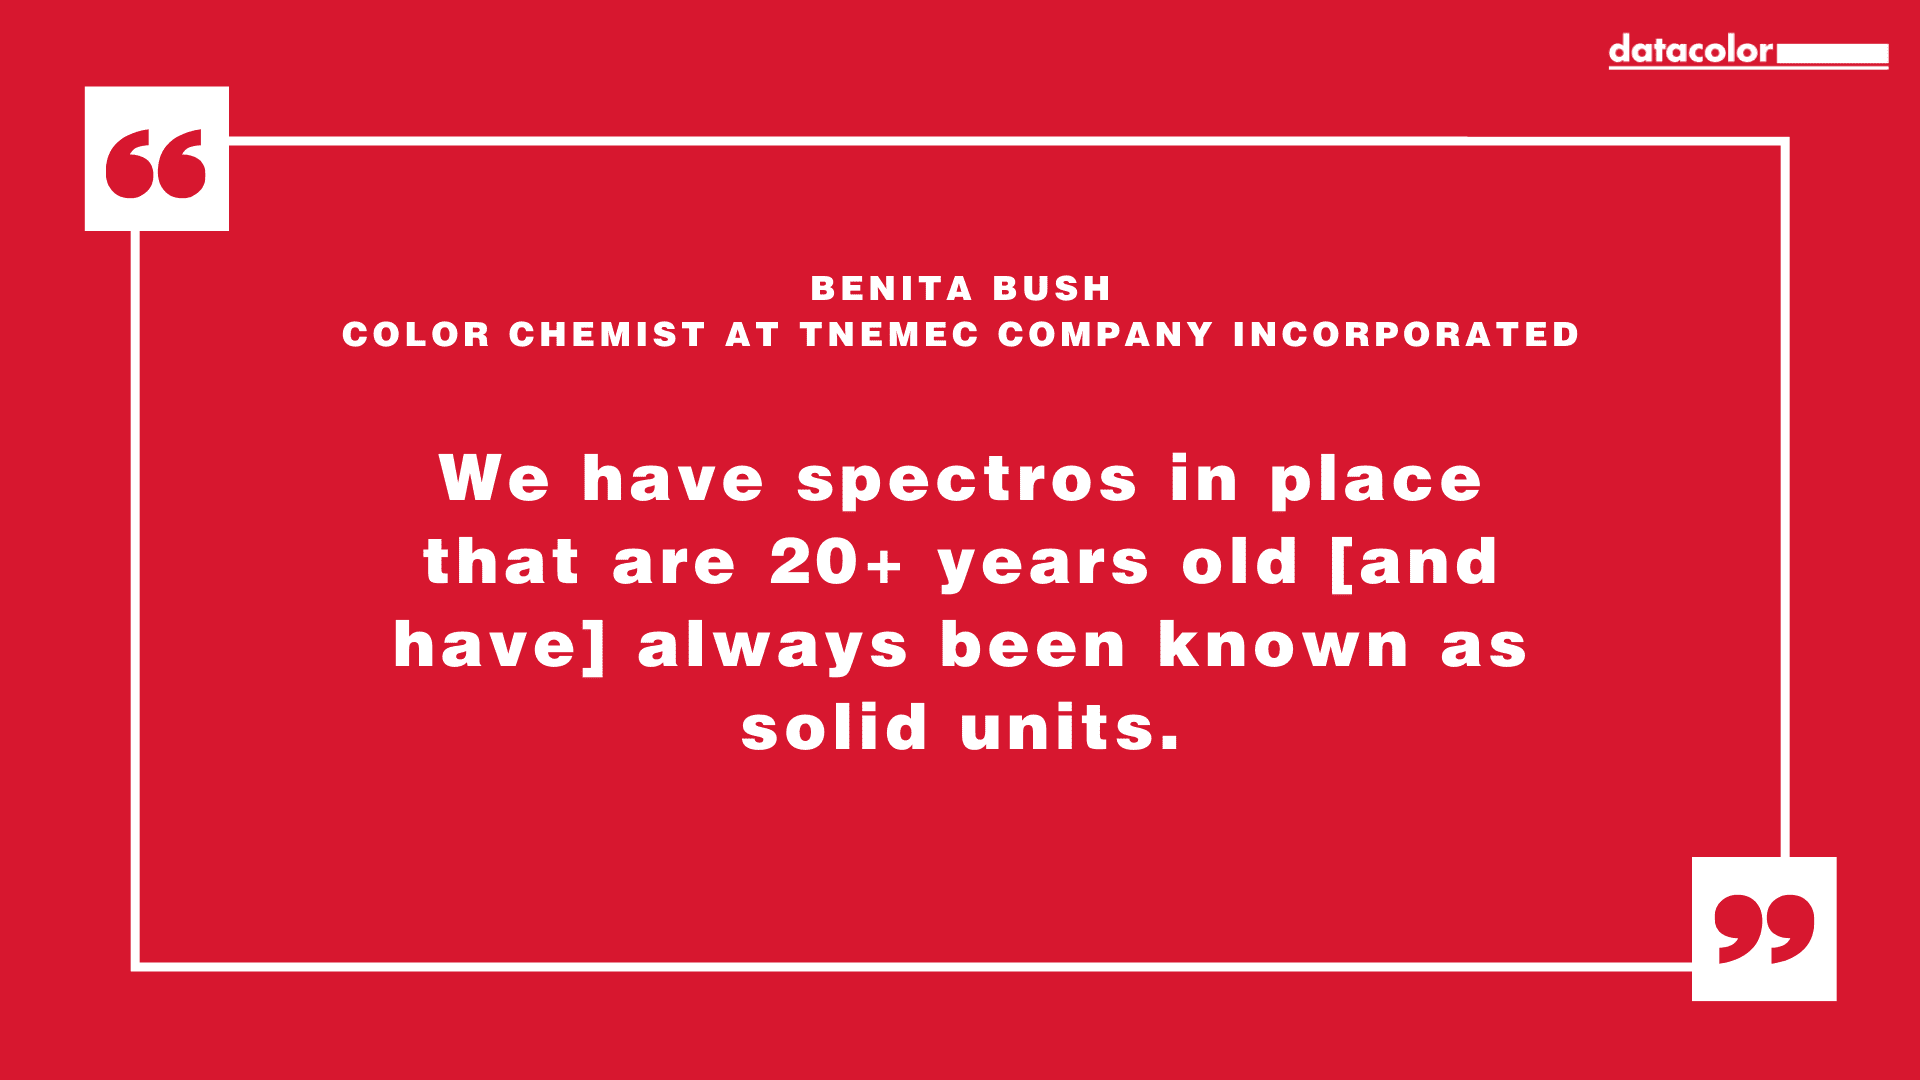 Citation de Benita Bush, chimiste spécialiste des couleurs chez Tnemec Company Incorporated